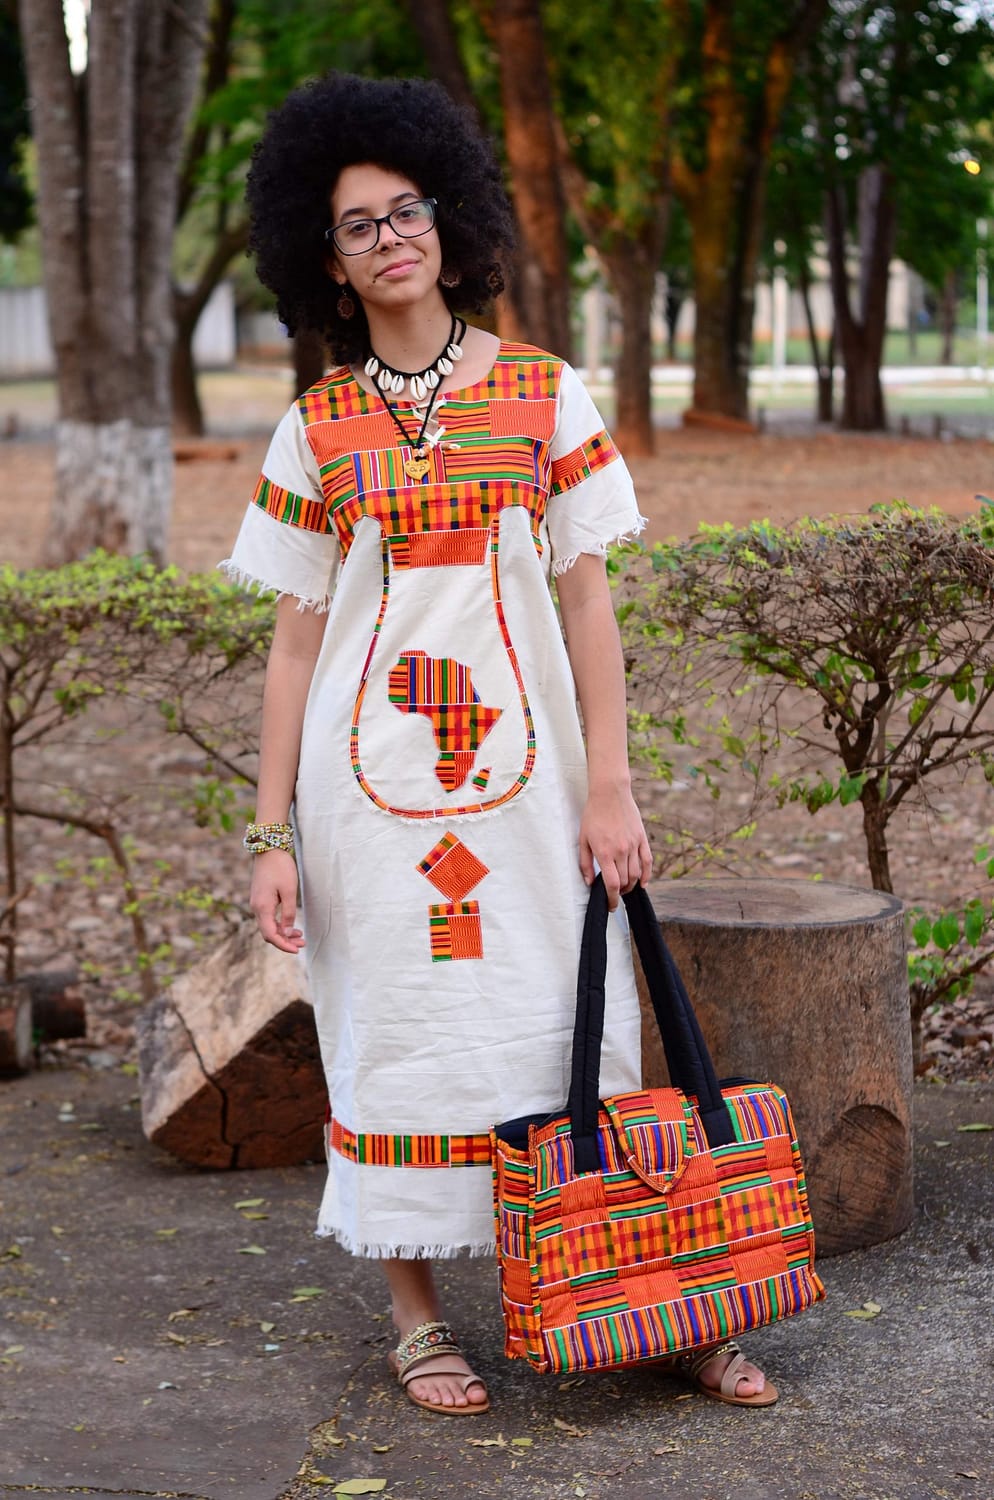 Roupa Africana – Vestido 9 disponível em Pronta entrega